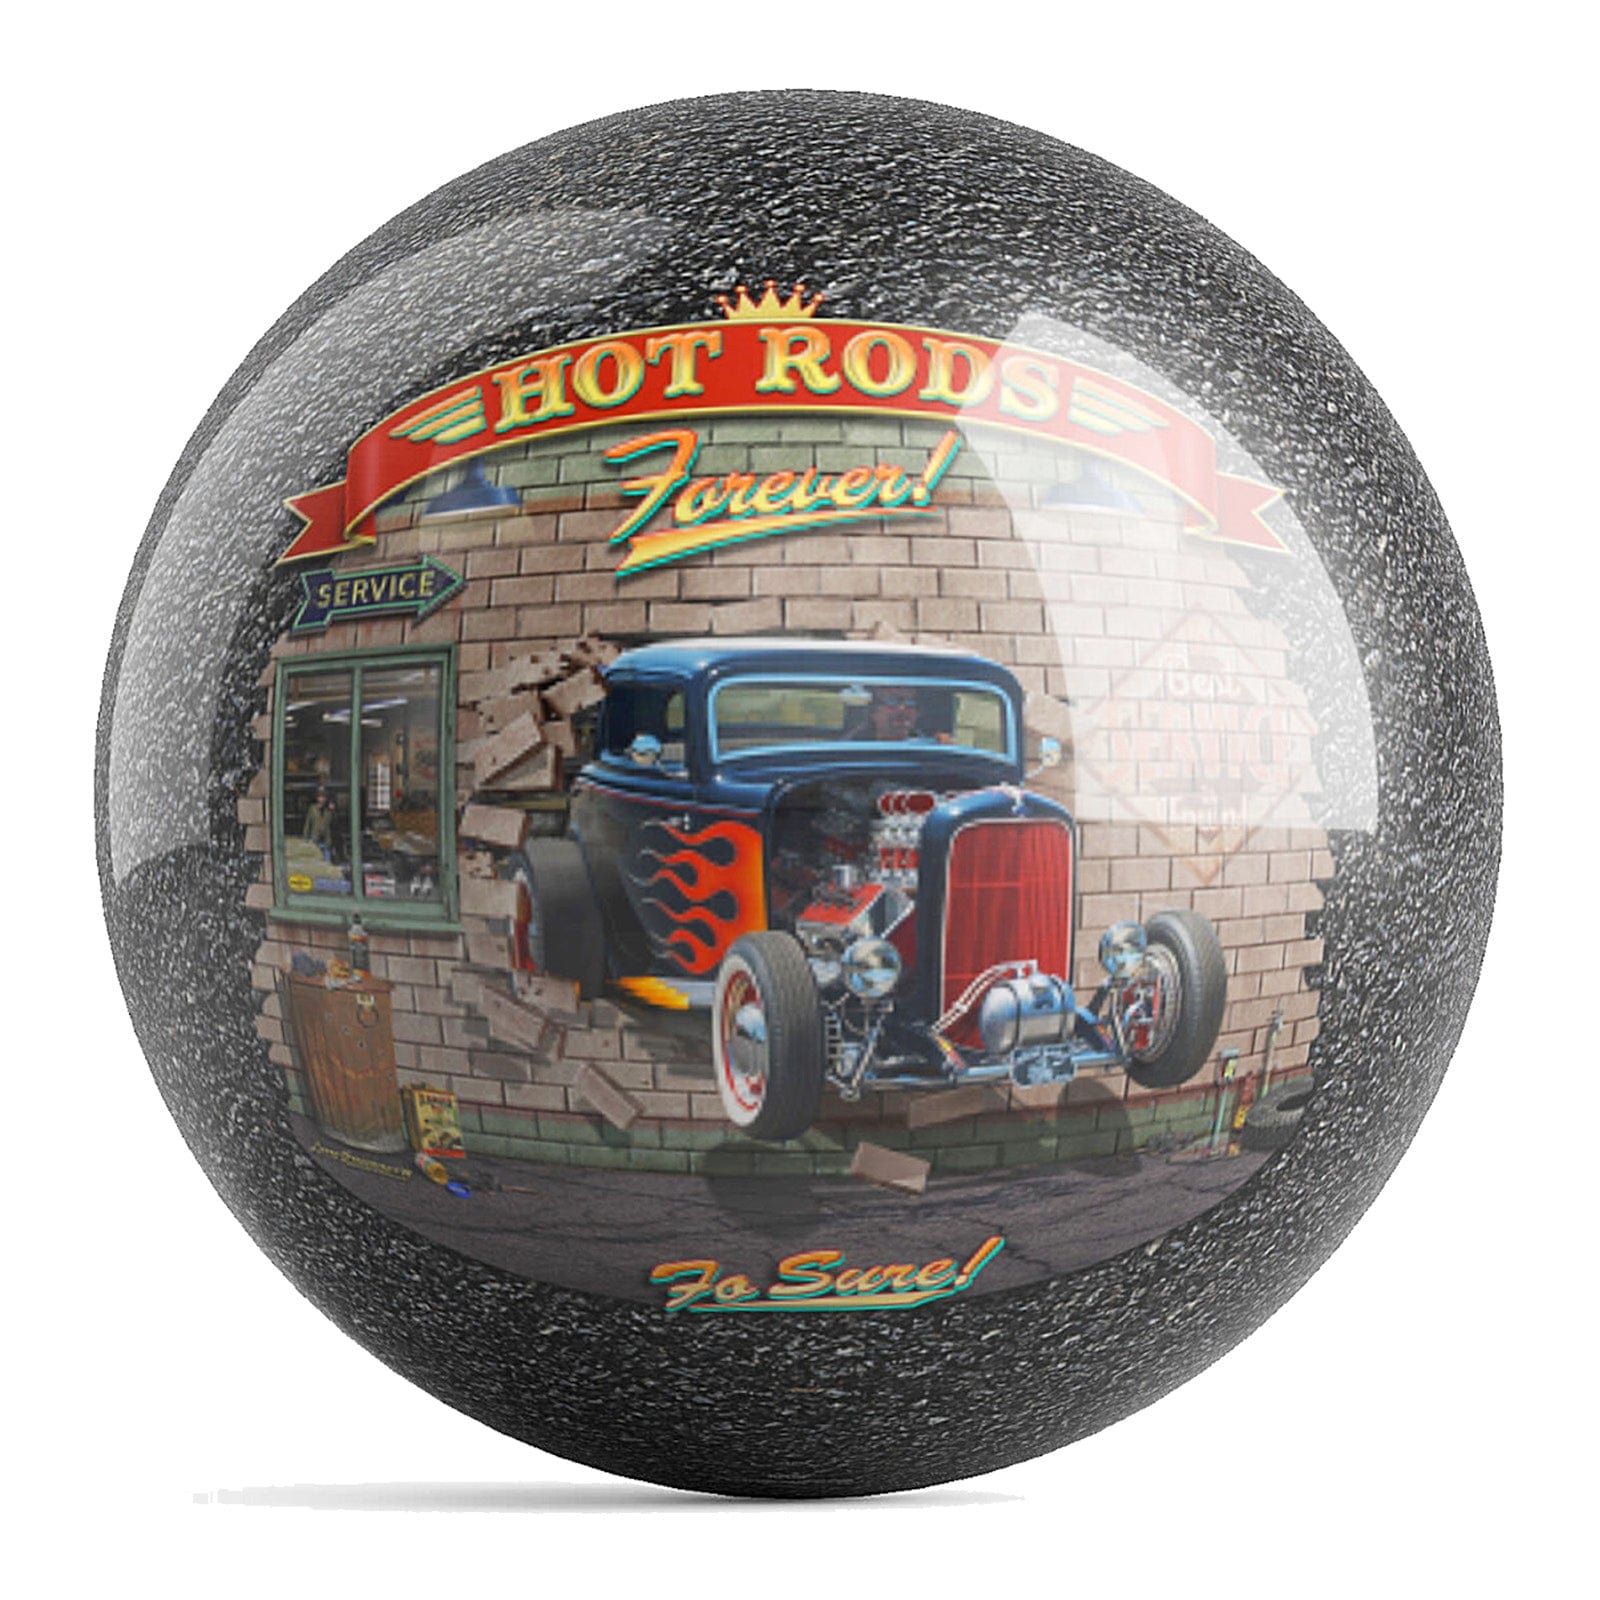 OnTheBallBowling Hot Rods Ball Bowling Ball by Larry Grossman